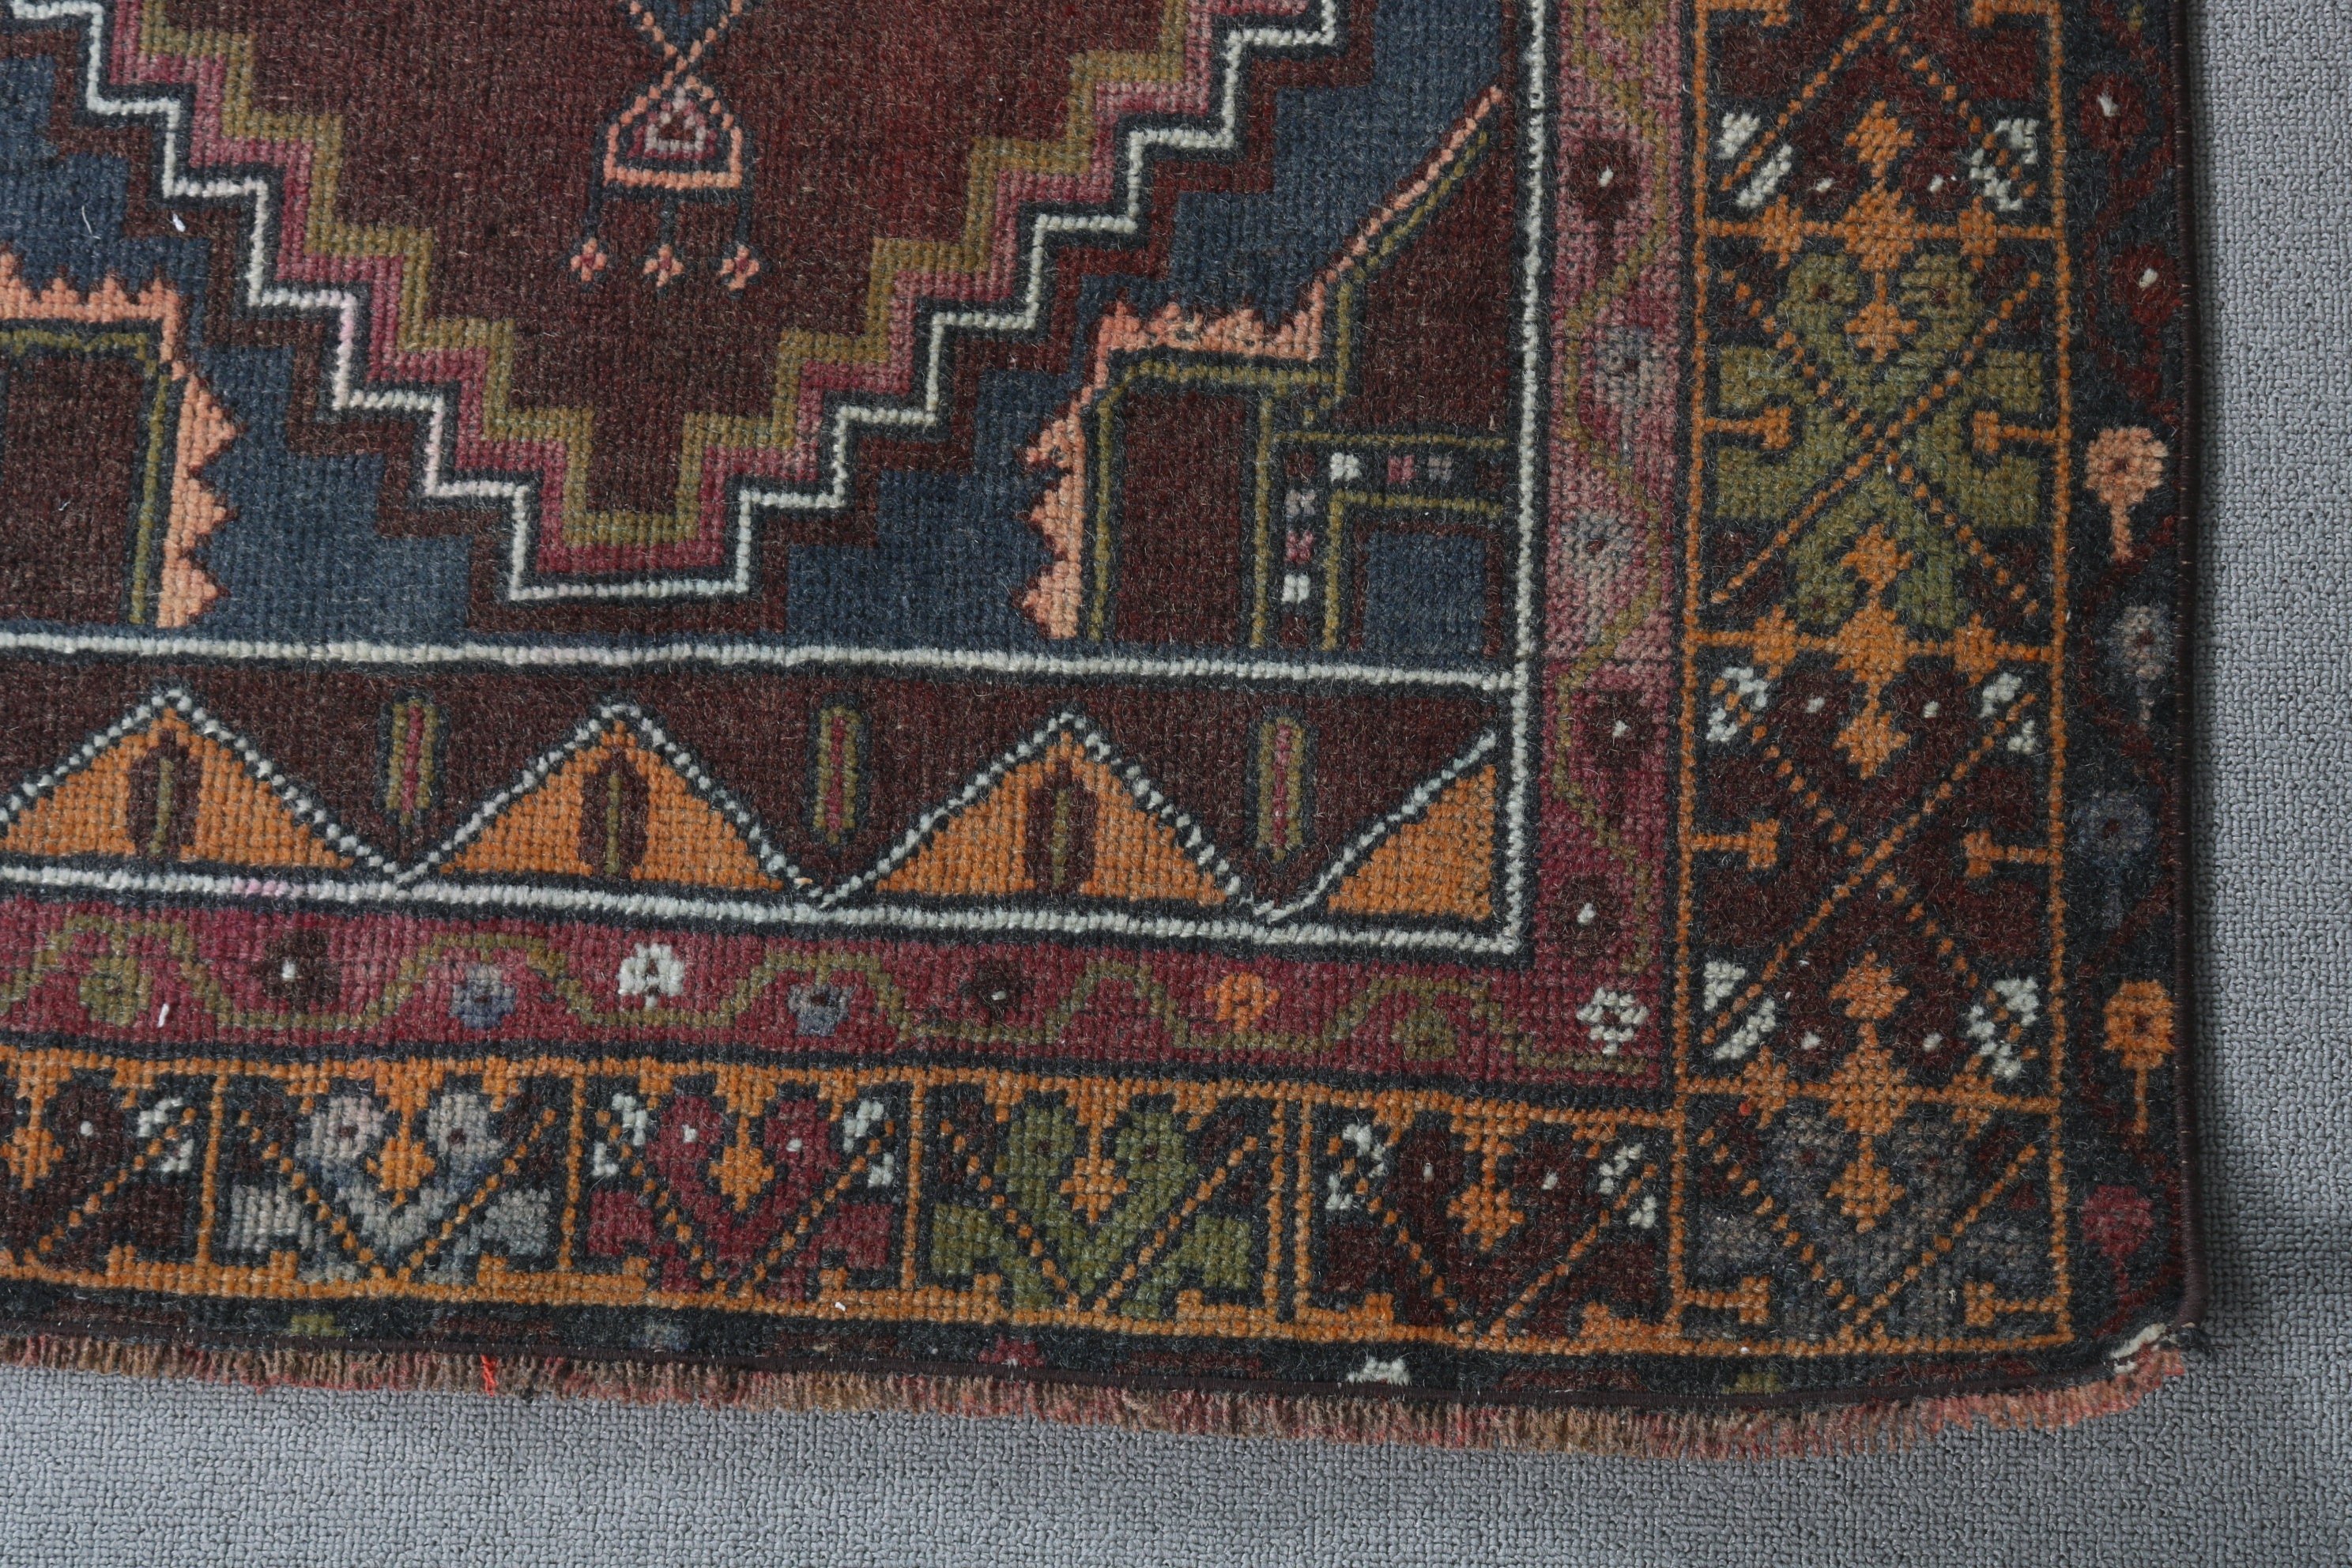 Turkish Rugs, Entryway Rug Rugs, Brown Floor Rug, Rugs for Bedroom, Vintage Rug, Kitchen Rugs, 3x5.1 ft Accent Rug, Entry Rug, Wool Rug